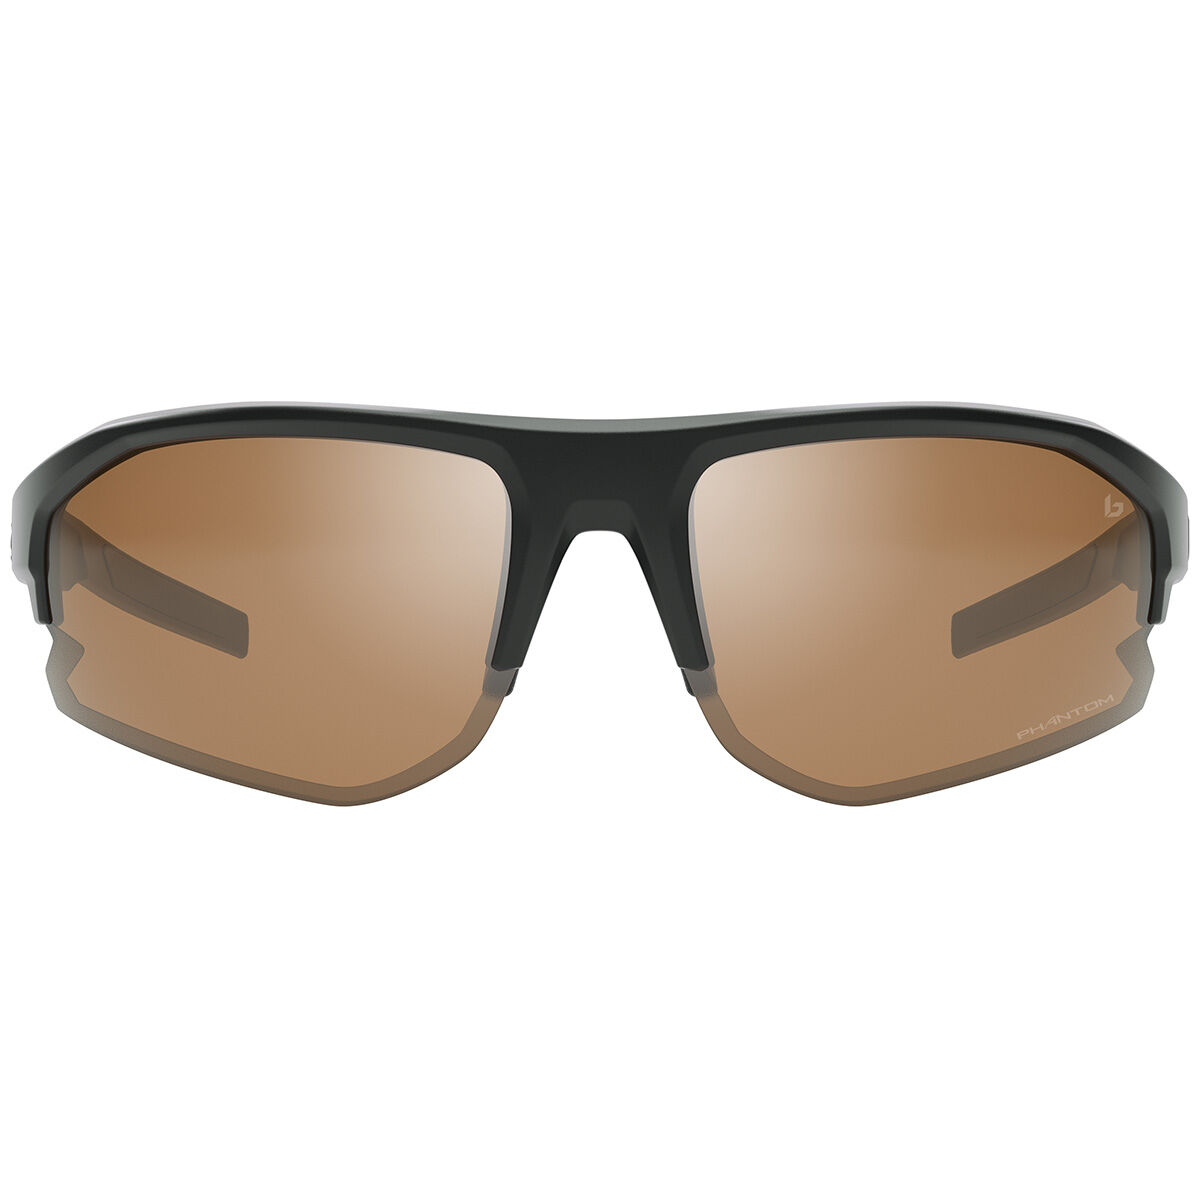 BOLT 2.0 Performance Sunglasses | Bollé